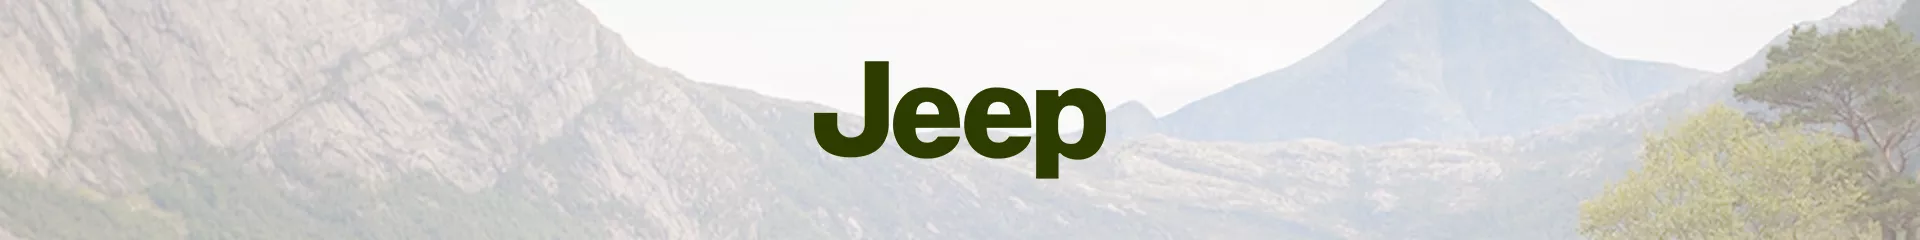 Felgenschlösser für Jeep günstig bestellen